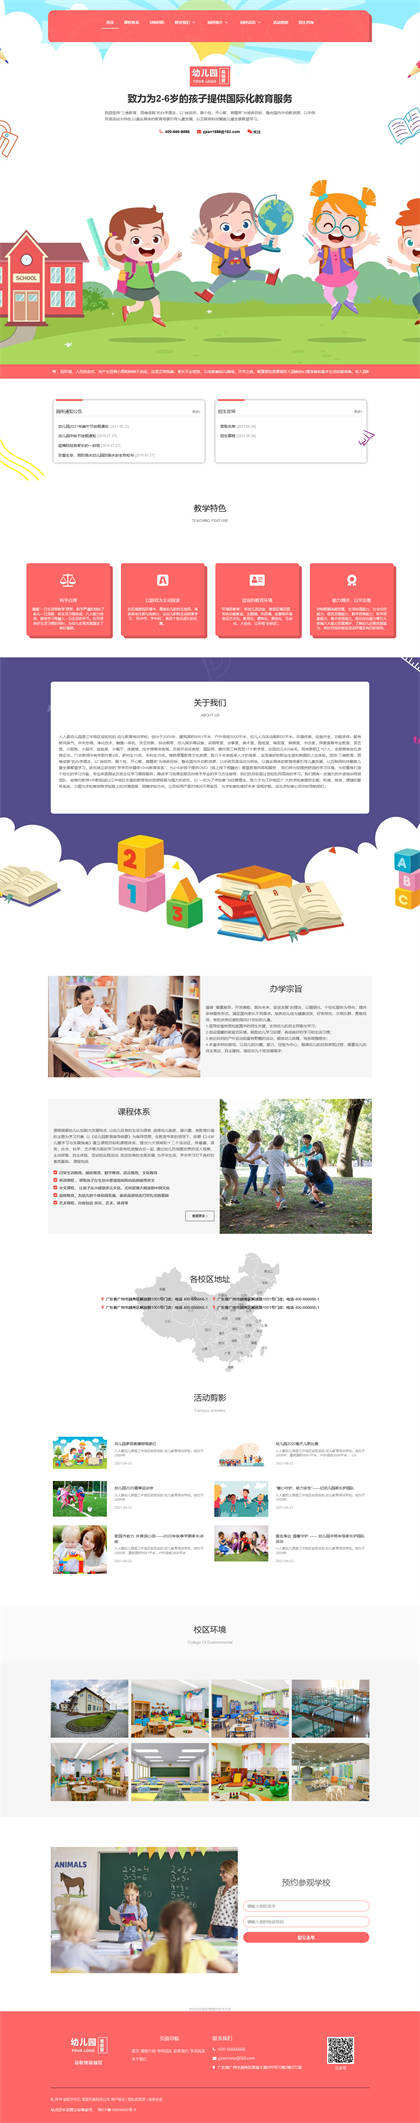 幼儿园-托儿所-早教中心-幼儿培训-早教机构网站模板网站模板图片